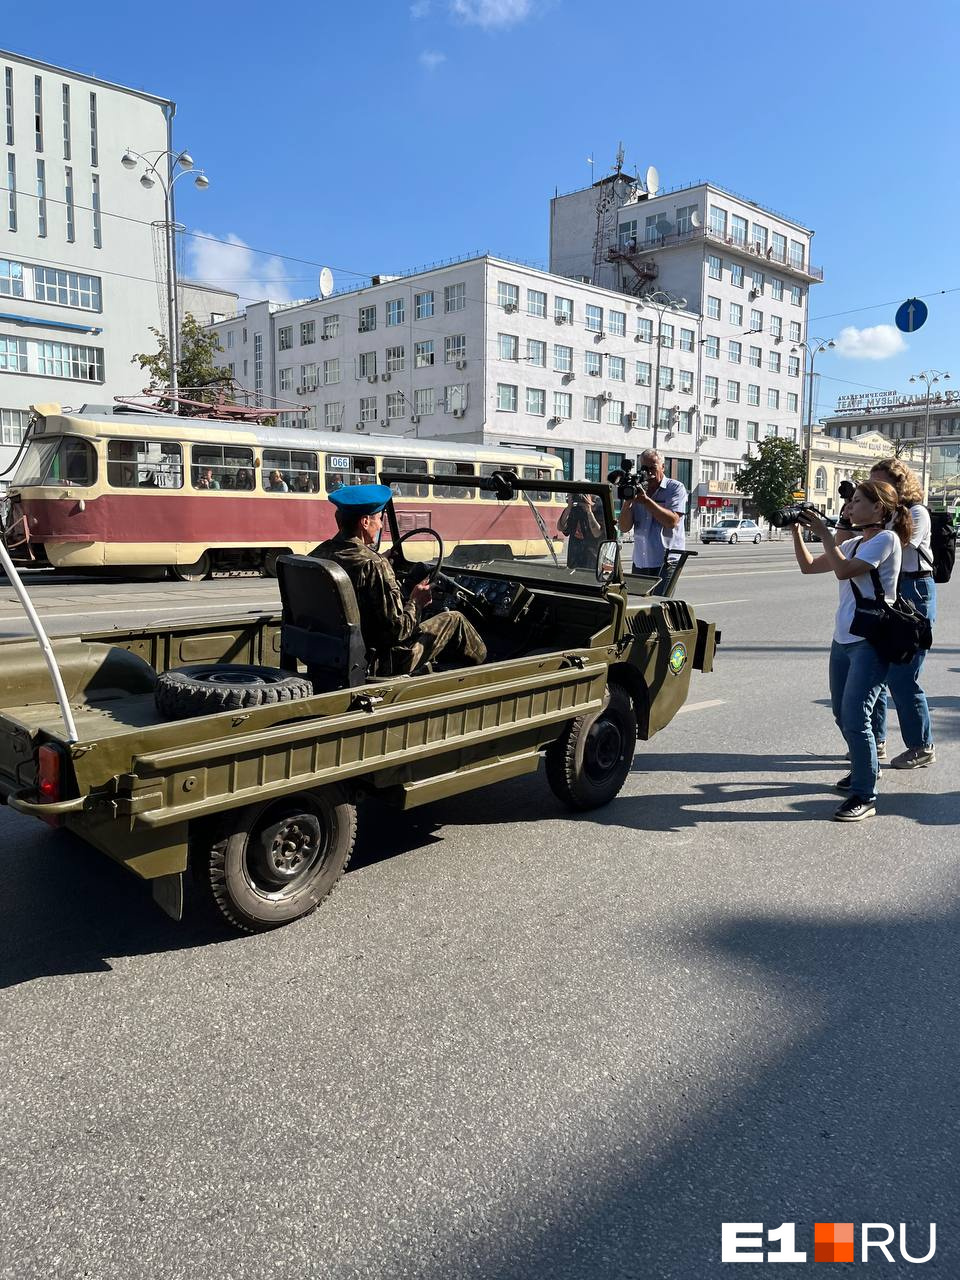 В центре Екатеринбурга собралась толпа в тельняшках: рассказываем, как отмечают День ВДВ